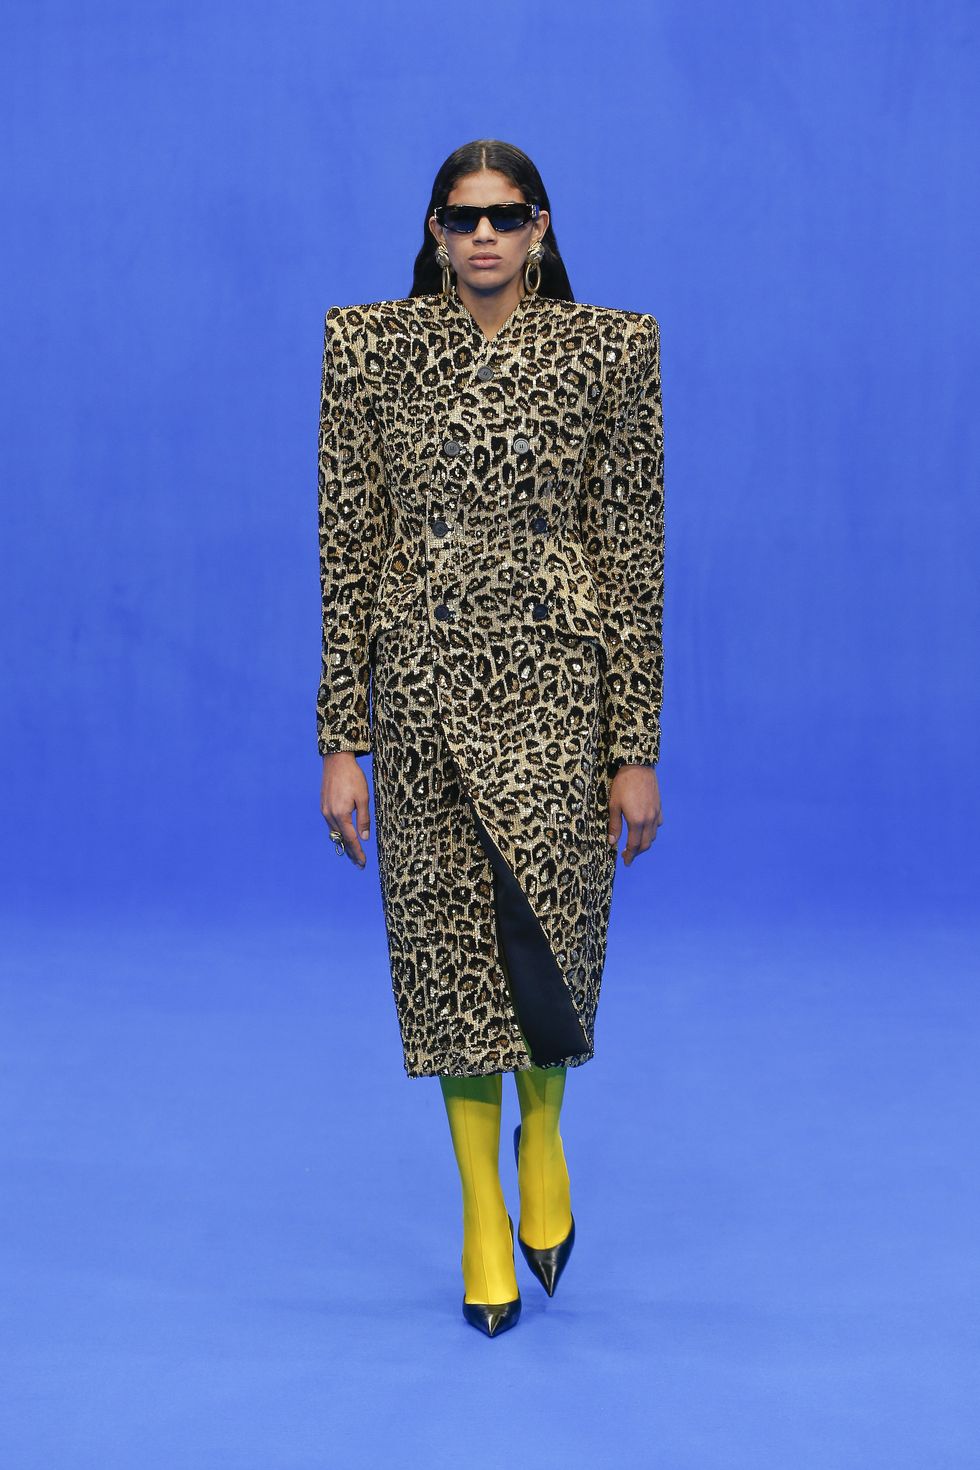 1960s 70s Leopard Print Wide Leg Pants 